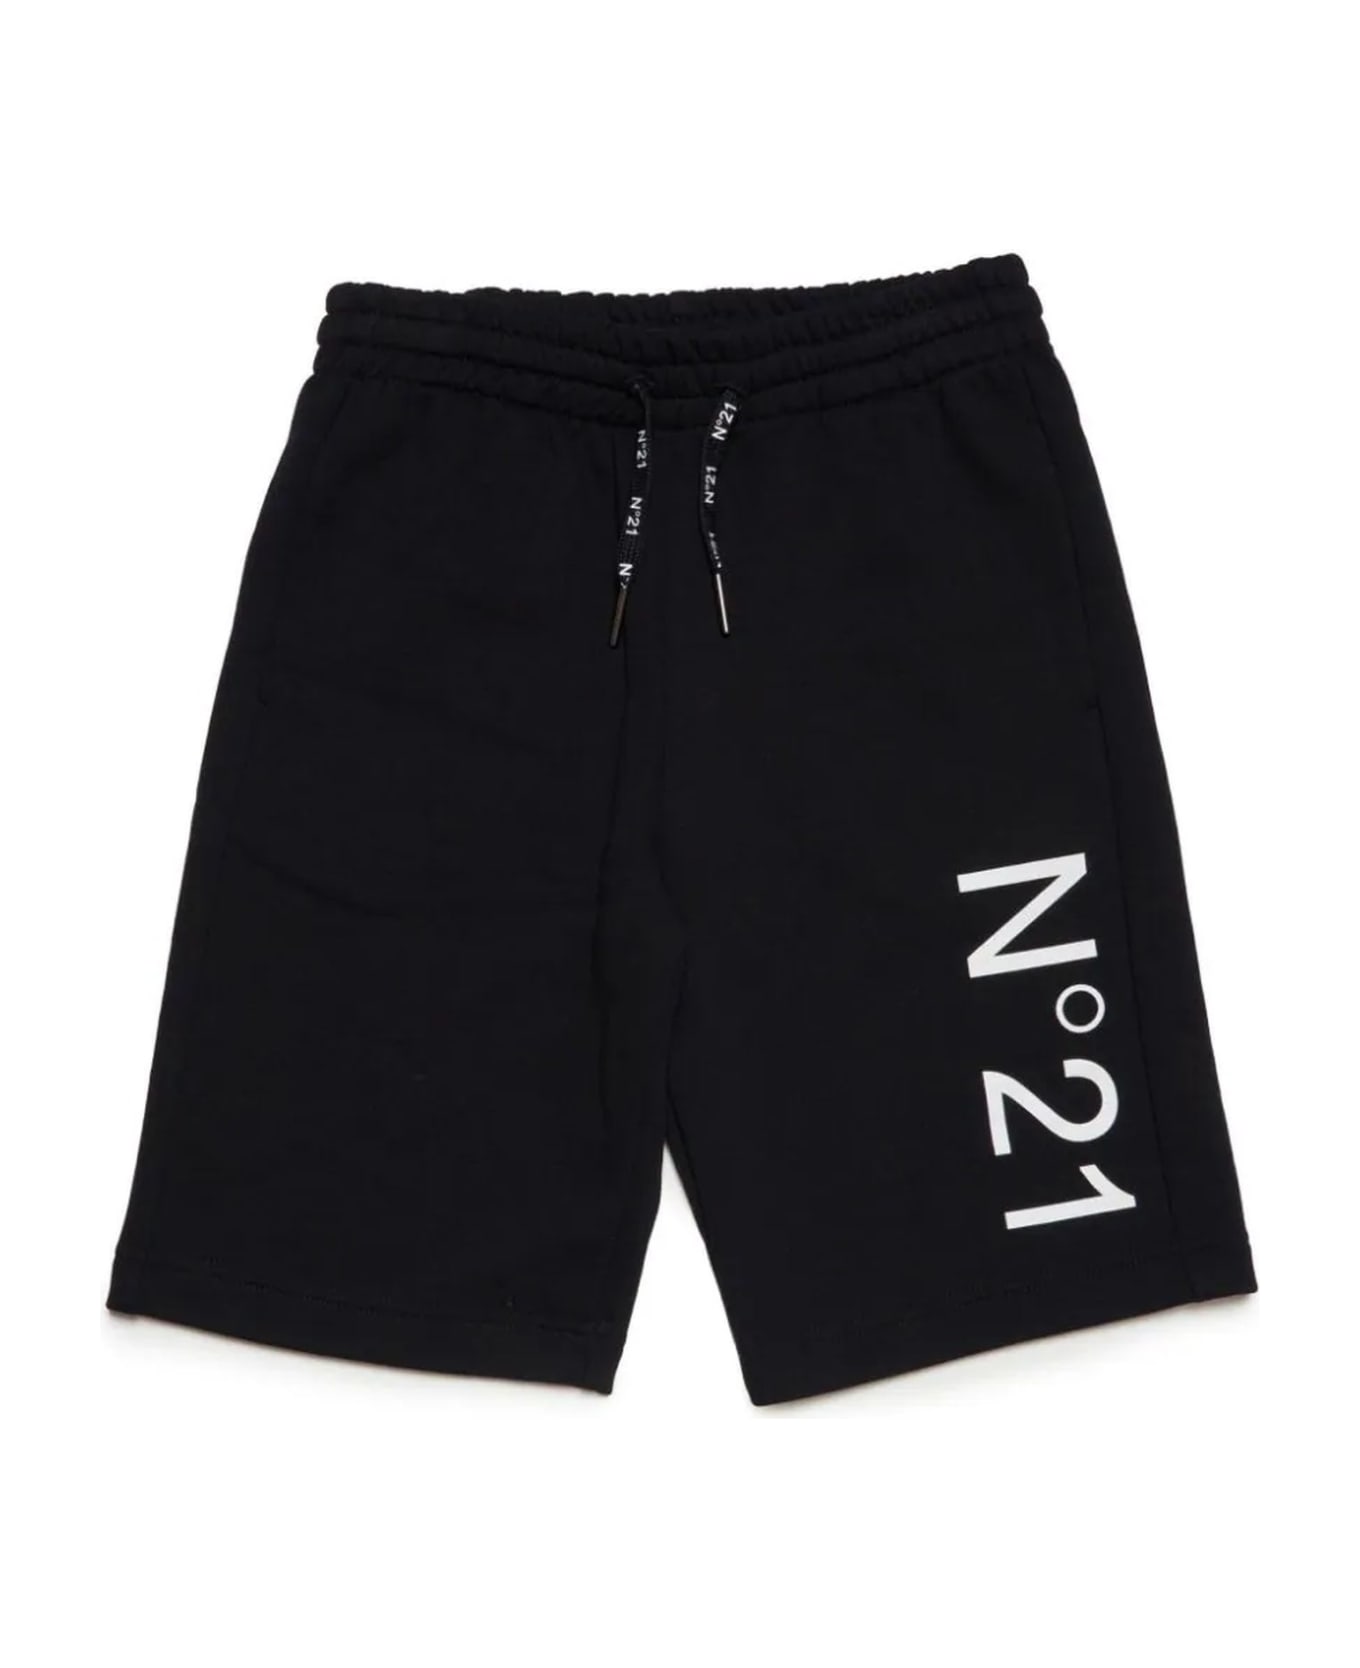 N.21 N°21 Shorts Black - Black ボトムス